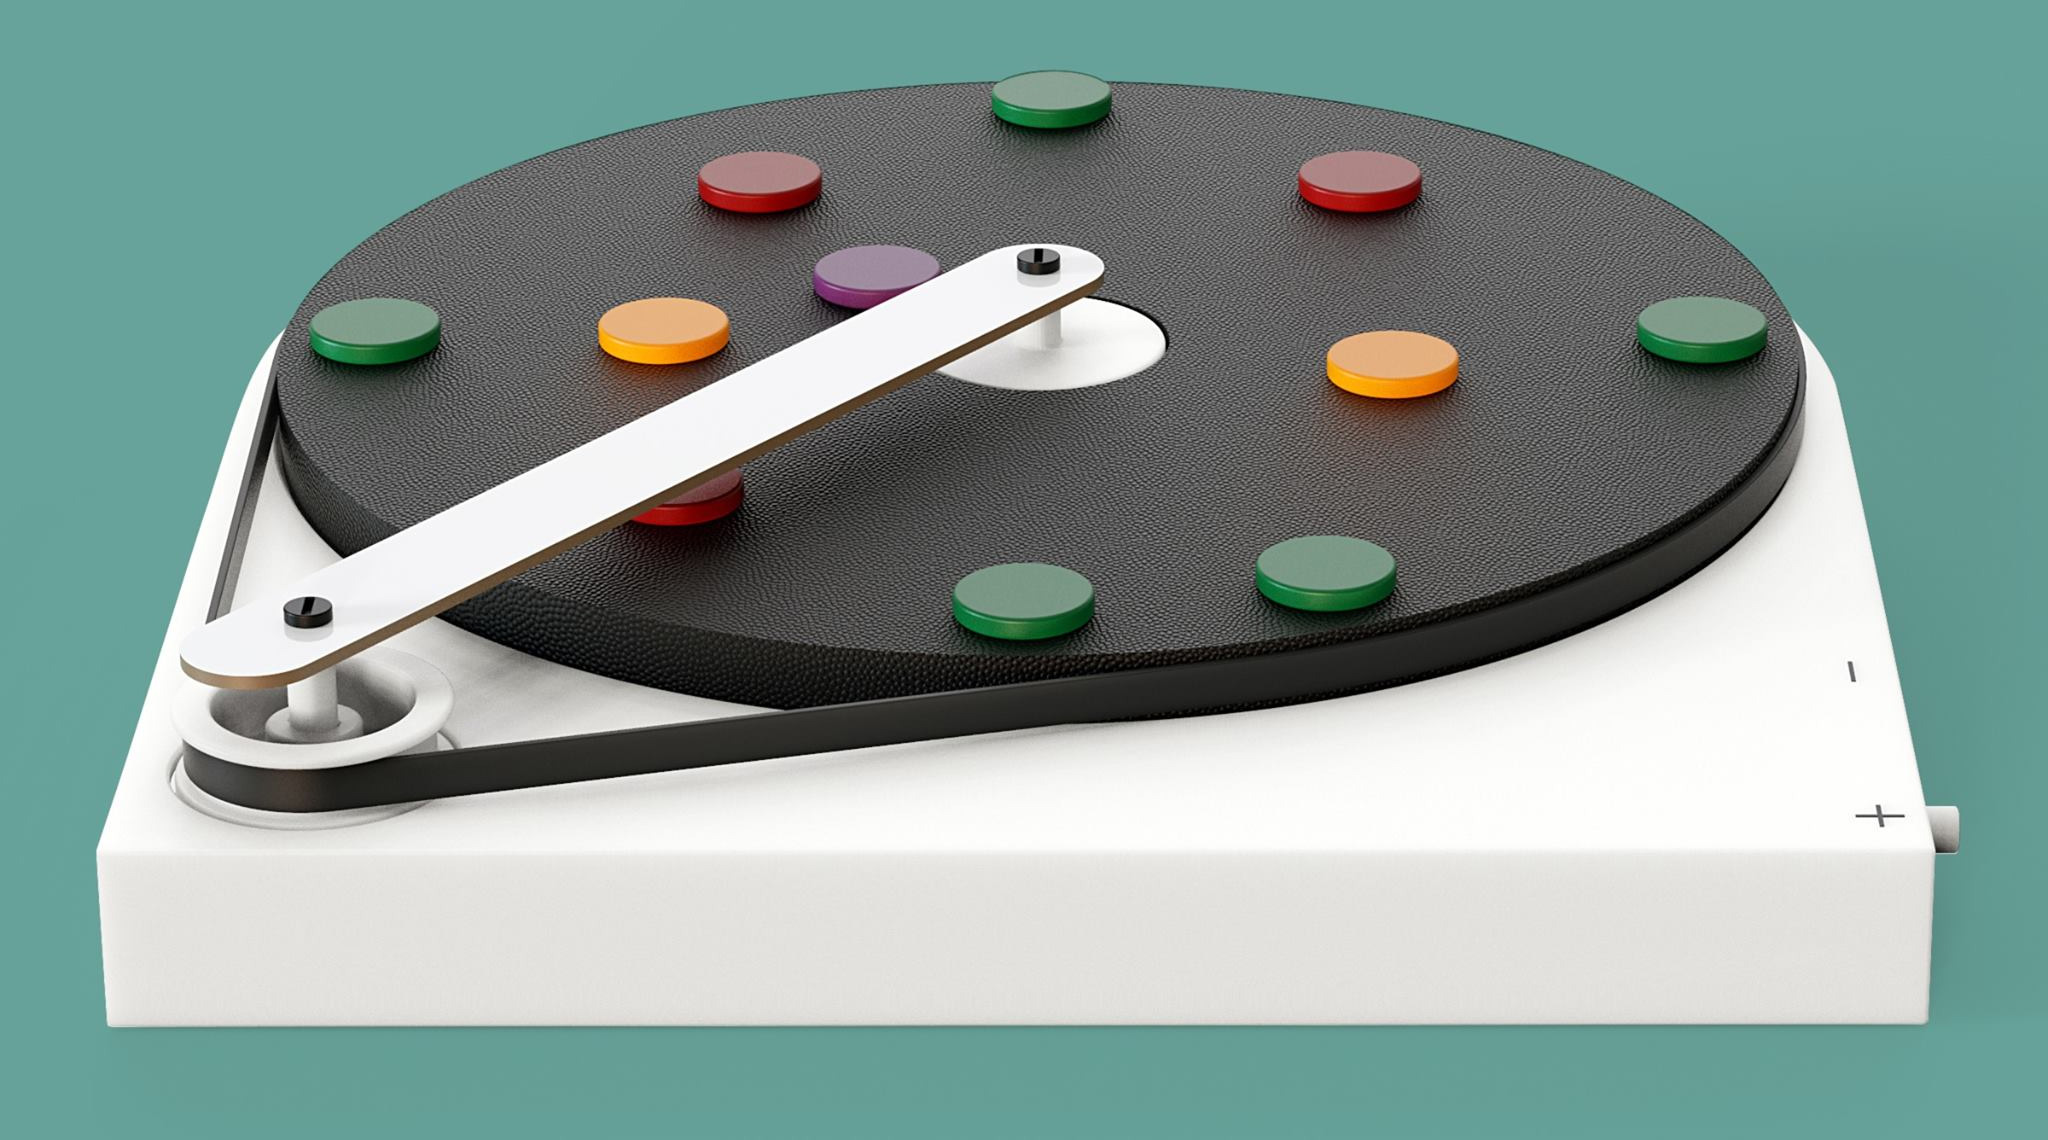 Imanes, colores y sensores: Orbita coinvierte la secuenciación en un juego